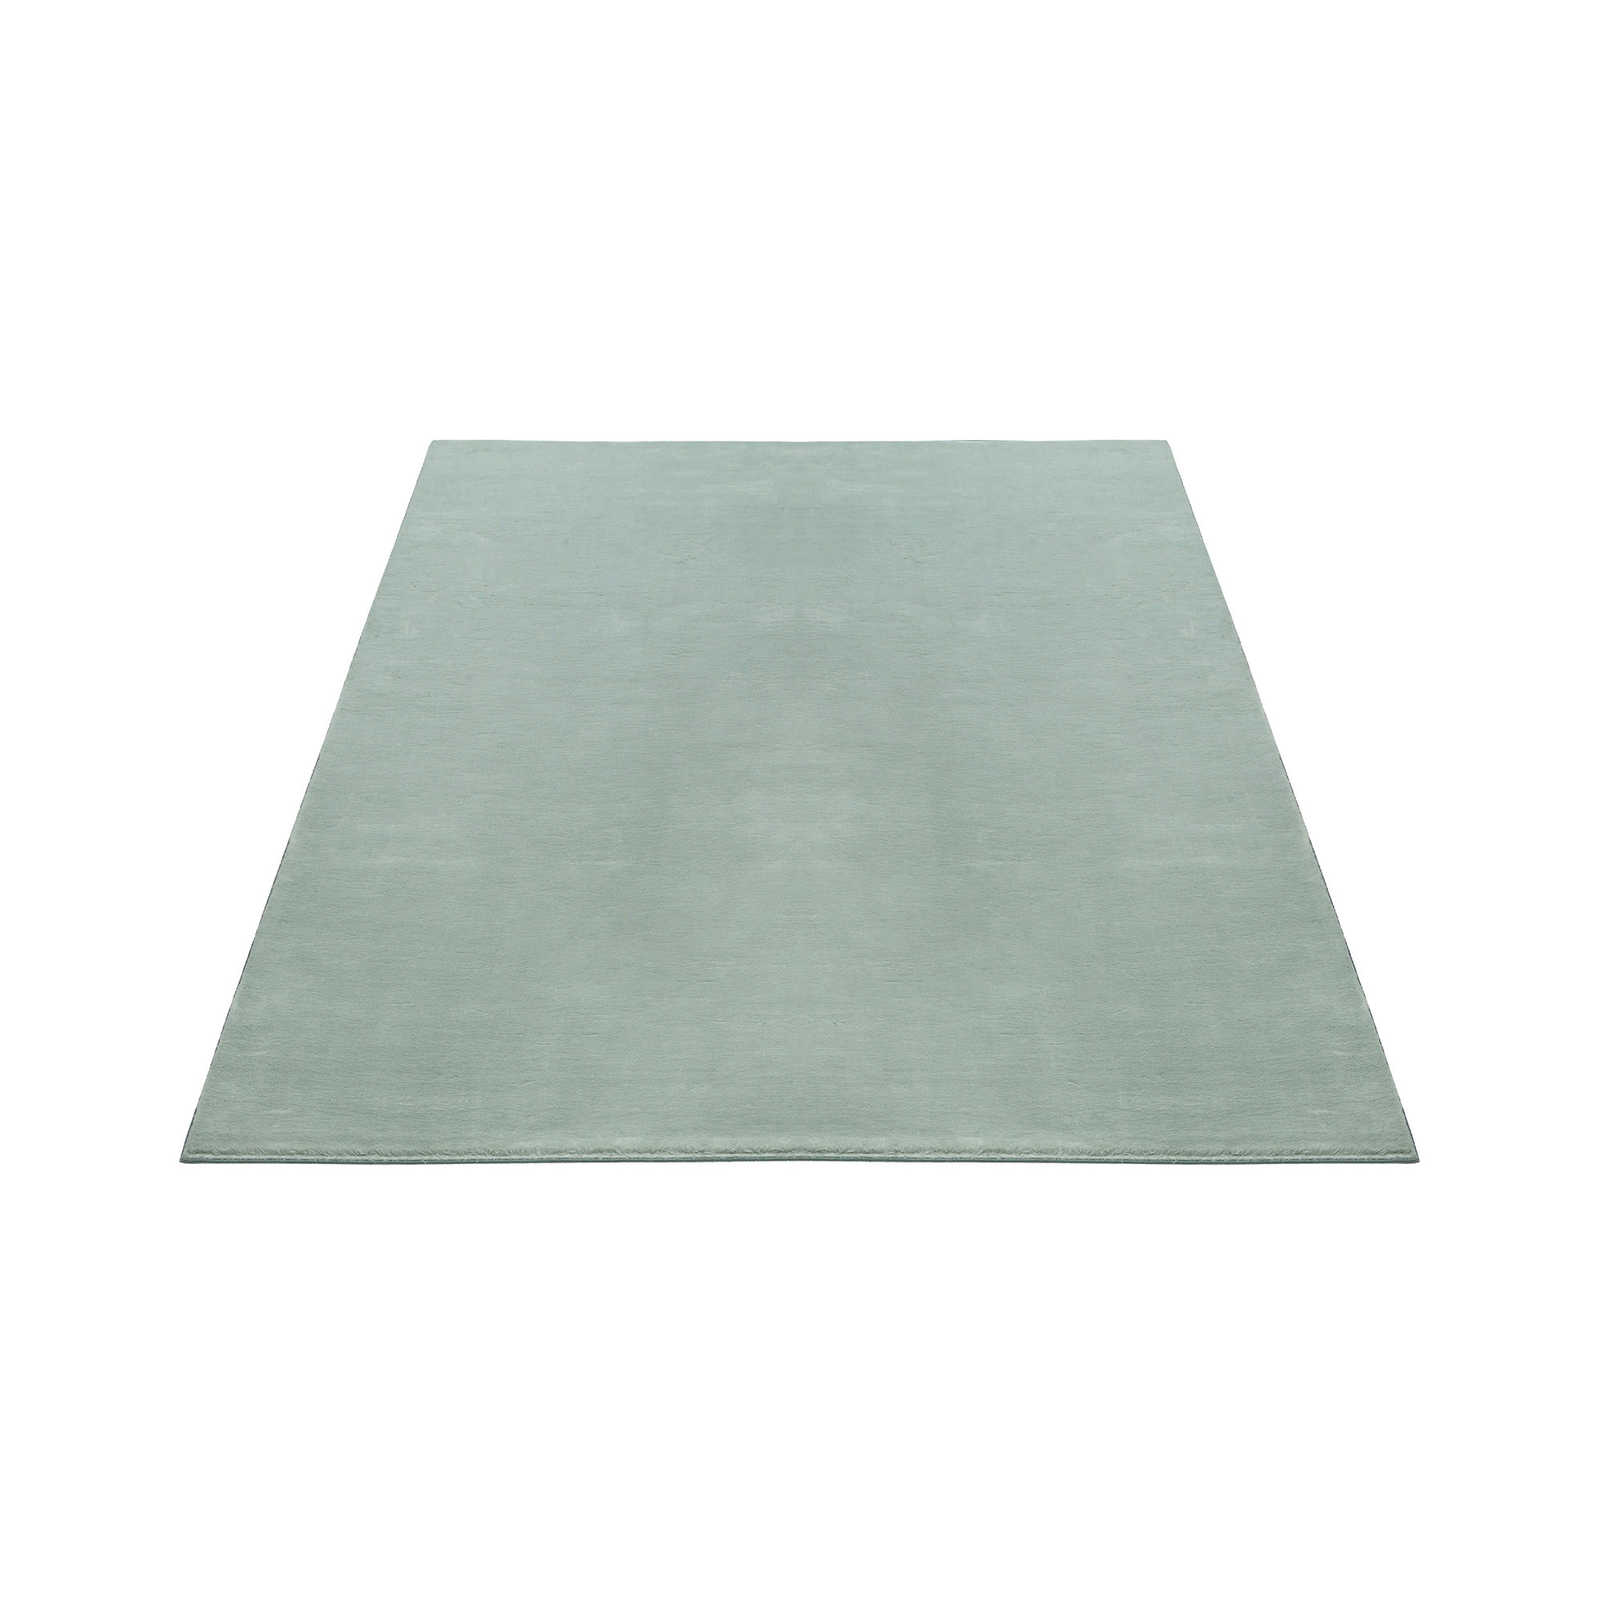 Zacht hoogpolig tapijt in zachtgroen - 230 x 160 cm
